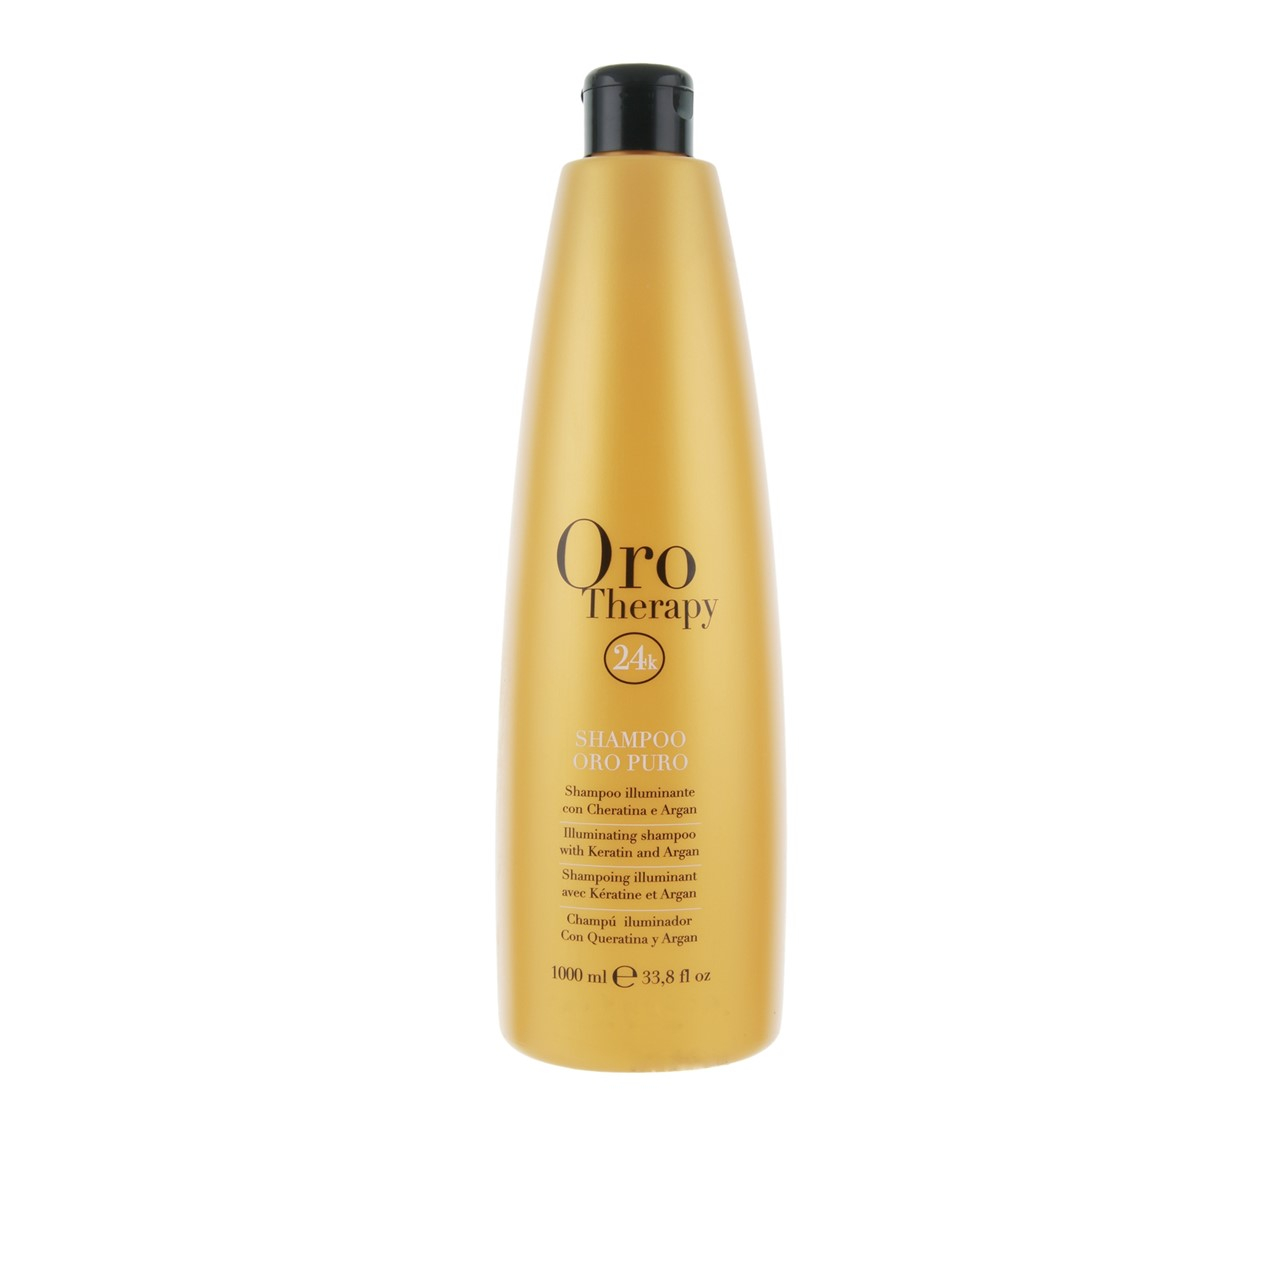 Fanola Oro Therapy 24k Oro Puro Illuminating Shampoo 1L (33.8 fl oz)